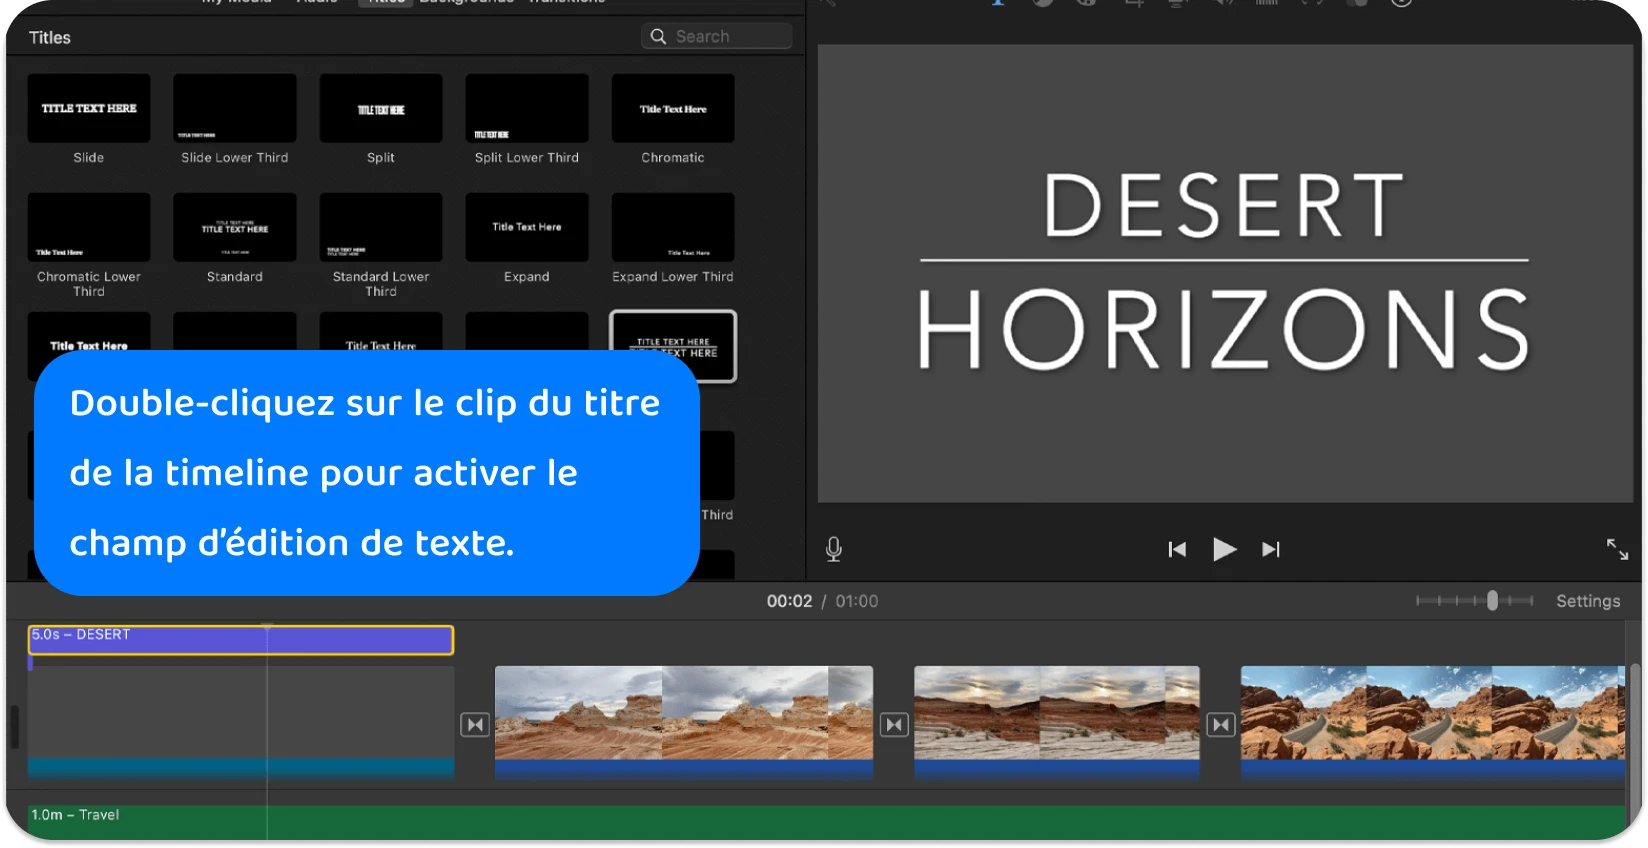 L’interface iMovie Titles affiche une variété de styles et de formats de texte permettant d’ajouter des titres professionnels à des projets vidéo.
